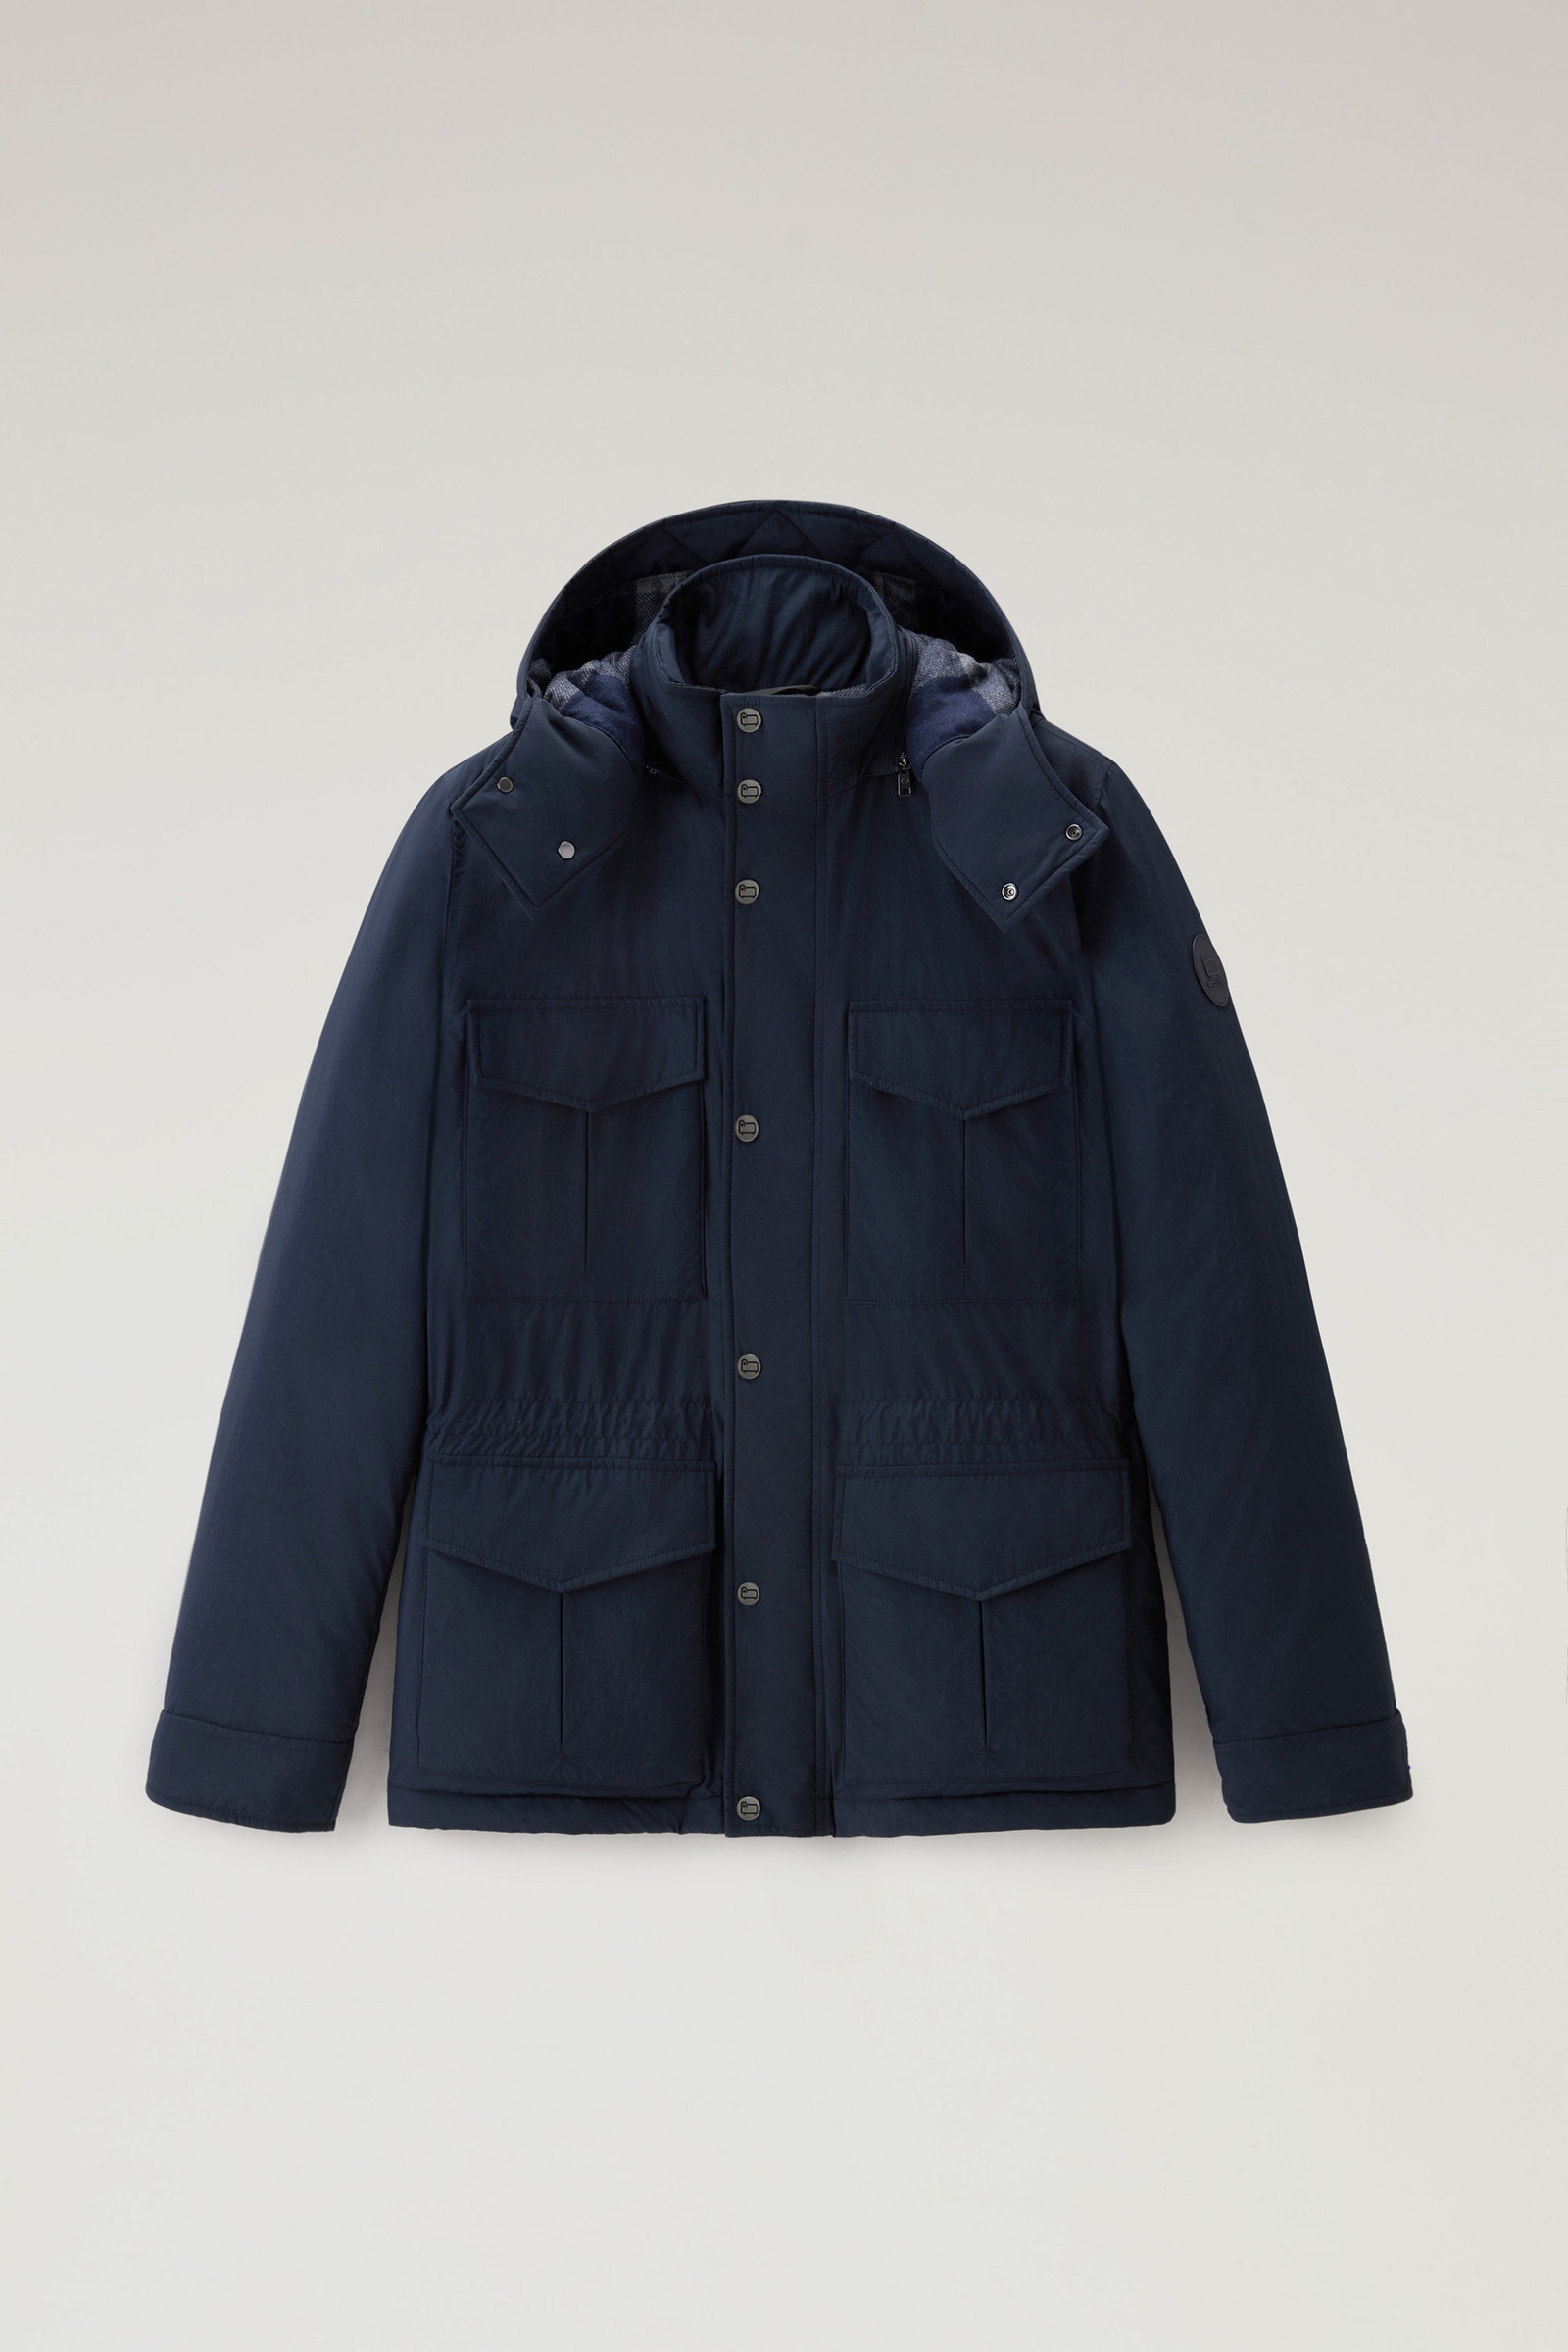 Men\'s Aleutian Field Jacket USA Blue in Woolrich | Taslan Hood Detachable Nylon with